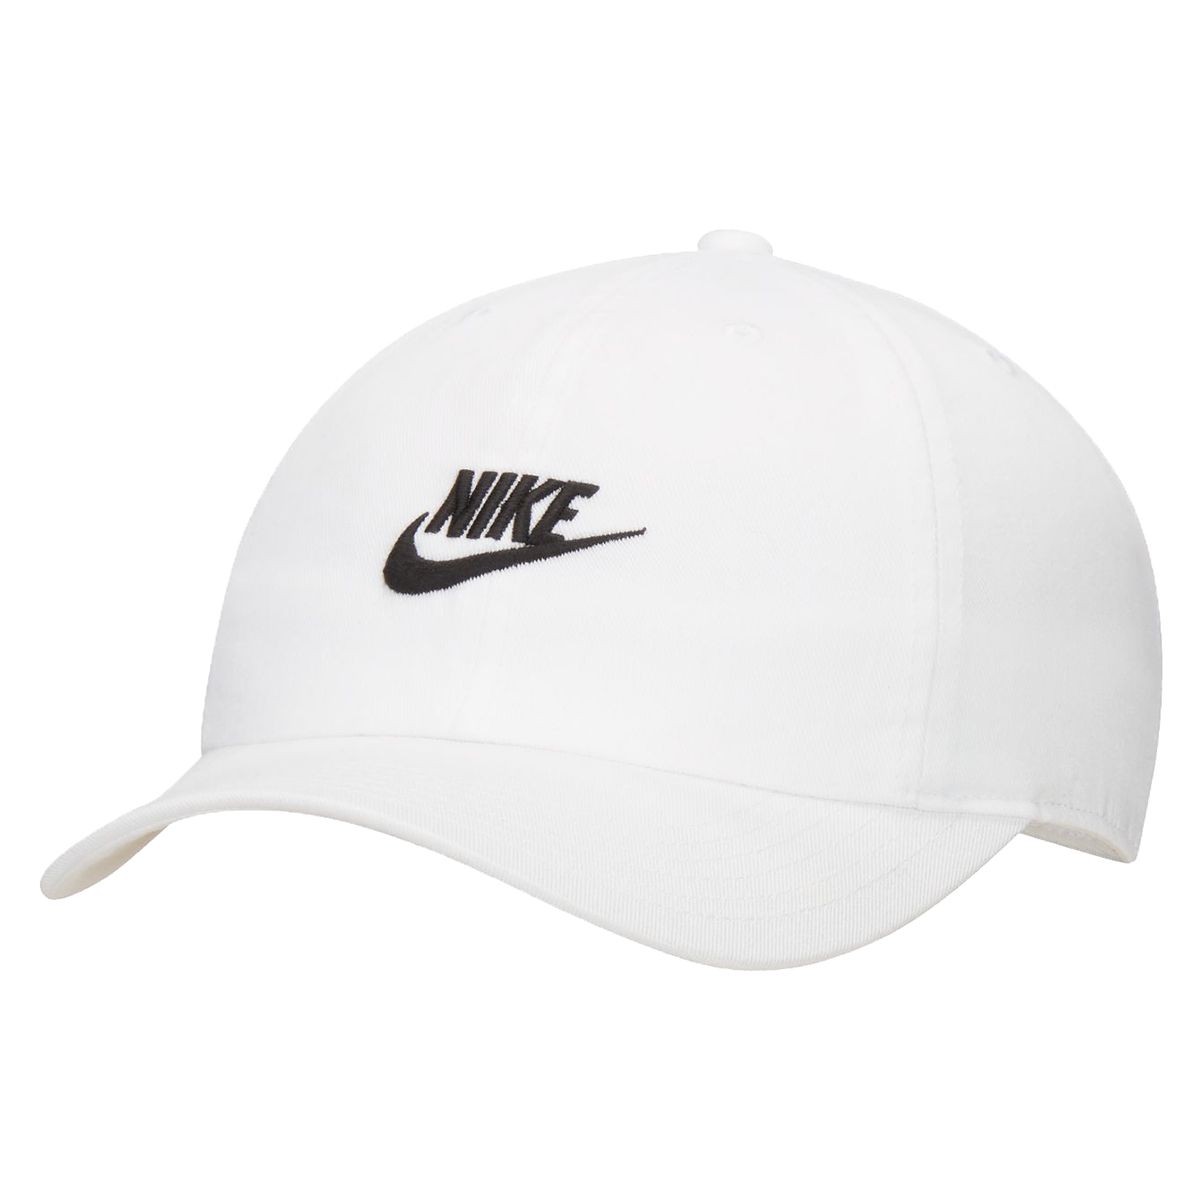 Nike Heritage 86 Kids' Adjustable Hat